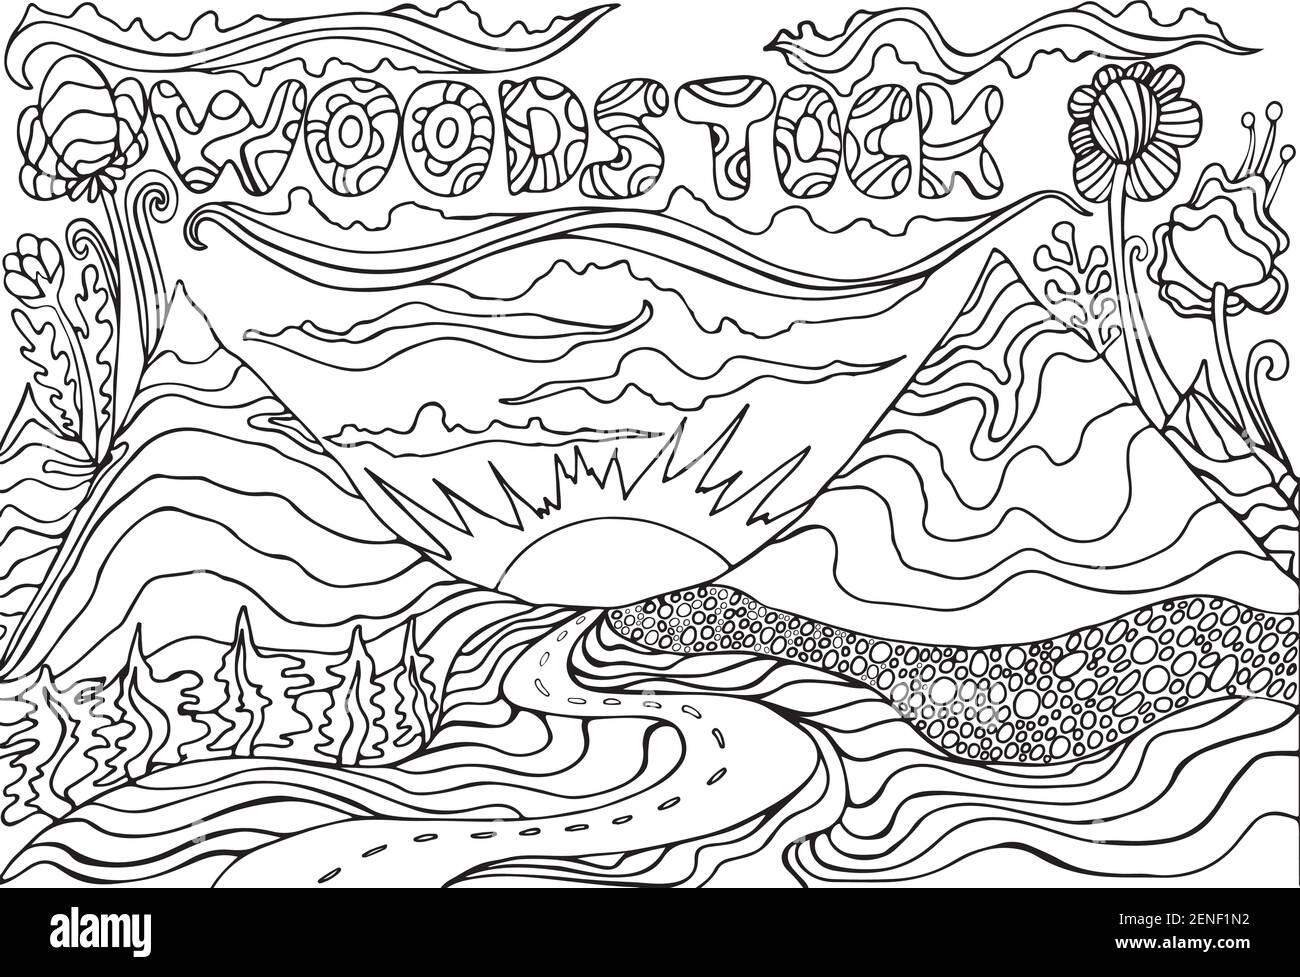 Pagina da colorare con l'iscrizione Woodstock, e paesaggio con montagne, il sole e la strada che va al tramonto. Illustrazione vettoriale disegnata a mano Illustrazione Vettoriale